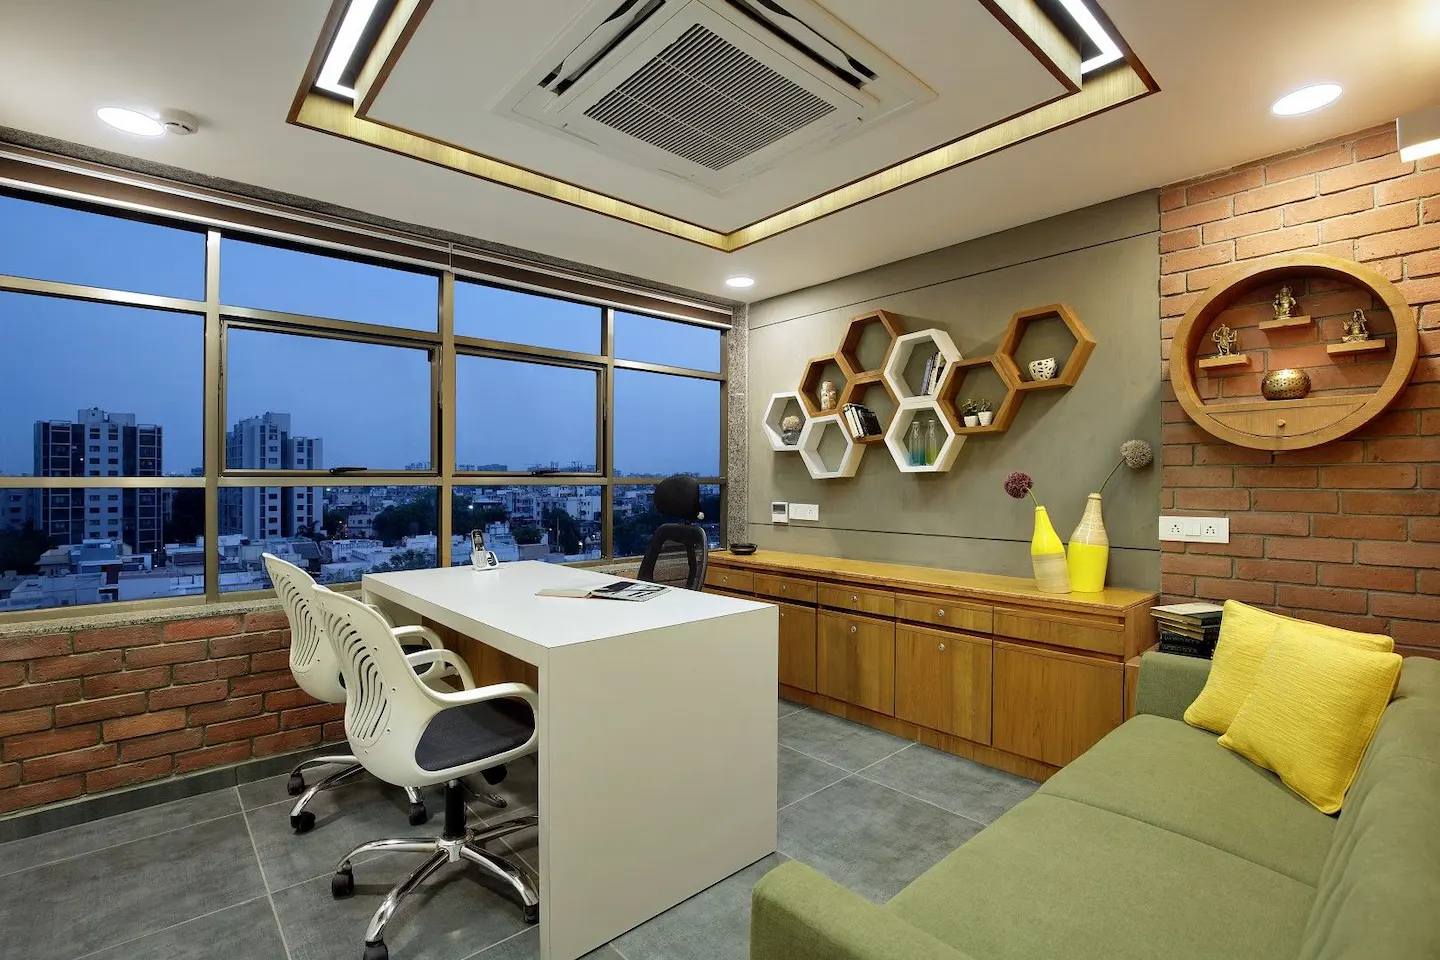 Creative Small Office Interior Design